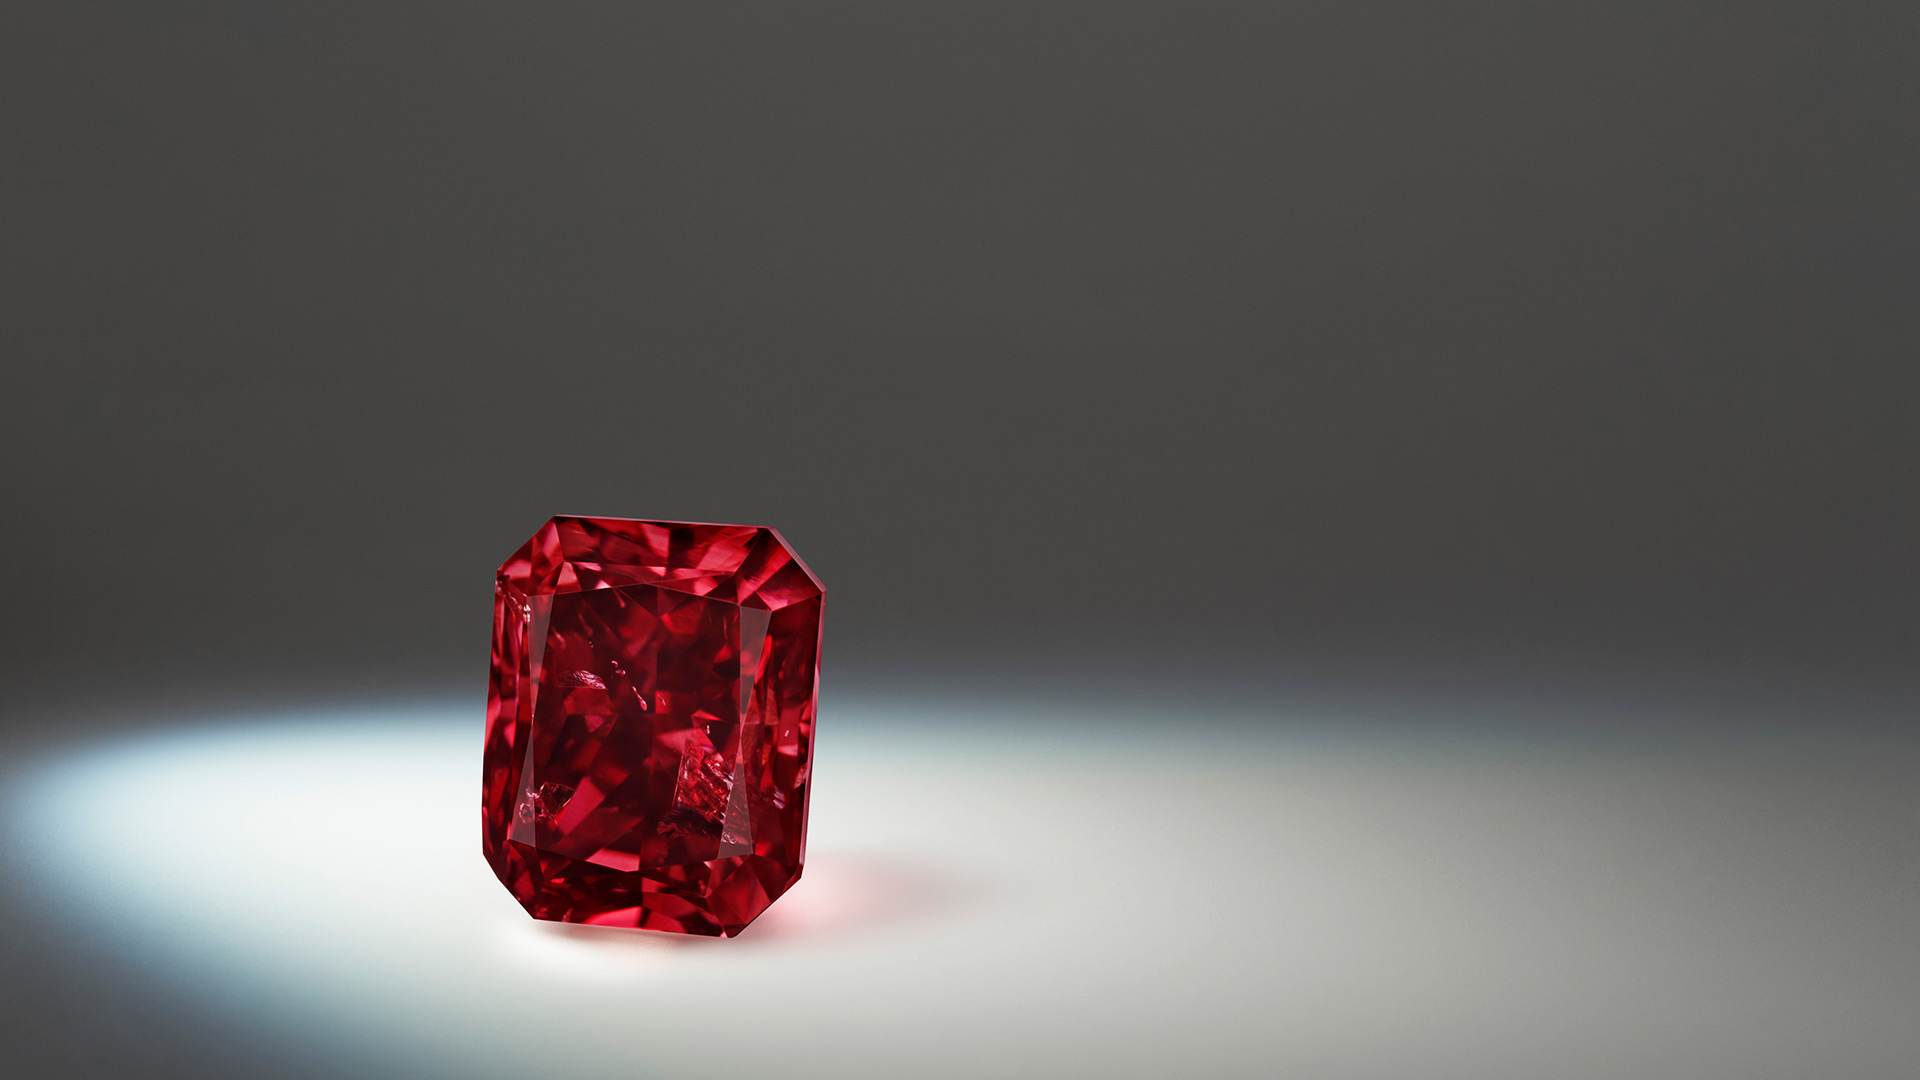 Lot 5, Argyle Bohème ™ a 1.01 carat, Fancy Red, radiant diamond